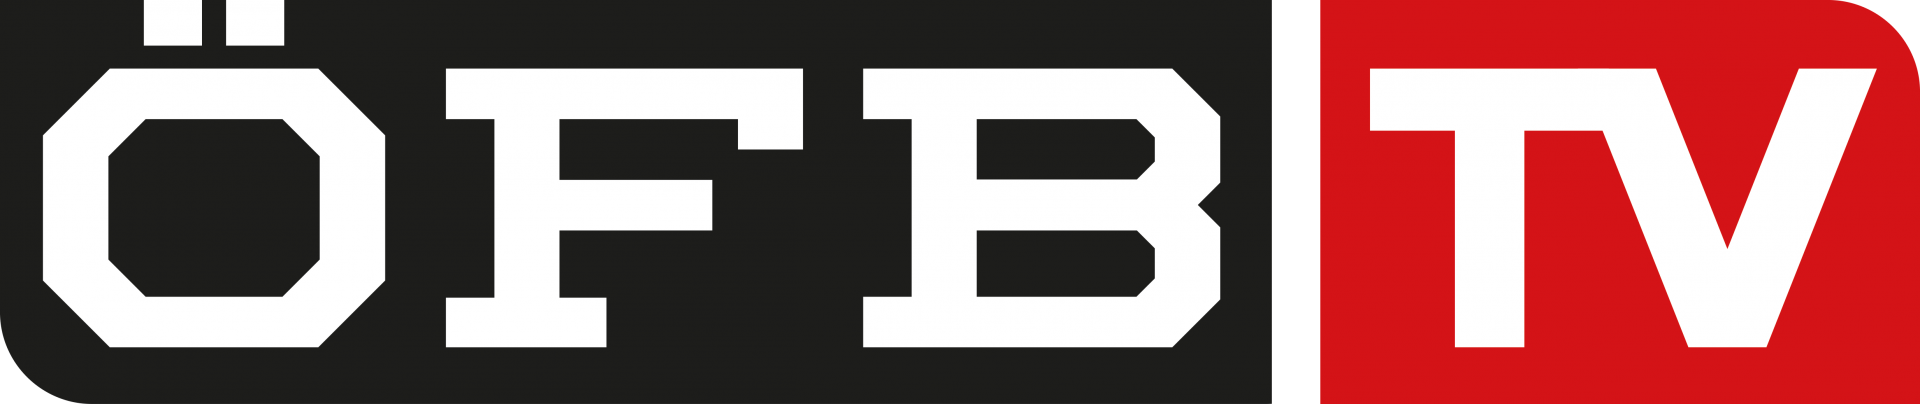 ÖFB TV Logo, Kunde von bitsfabrik GmbH